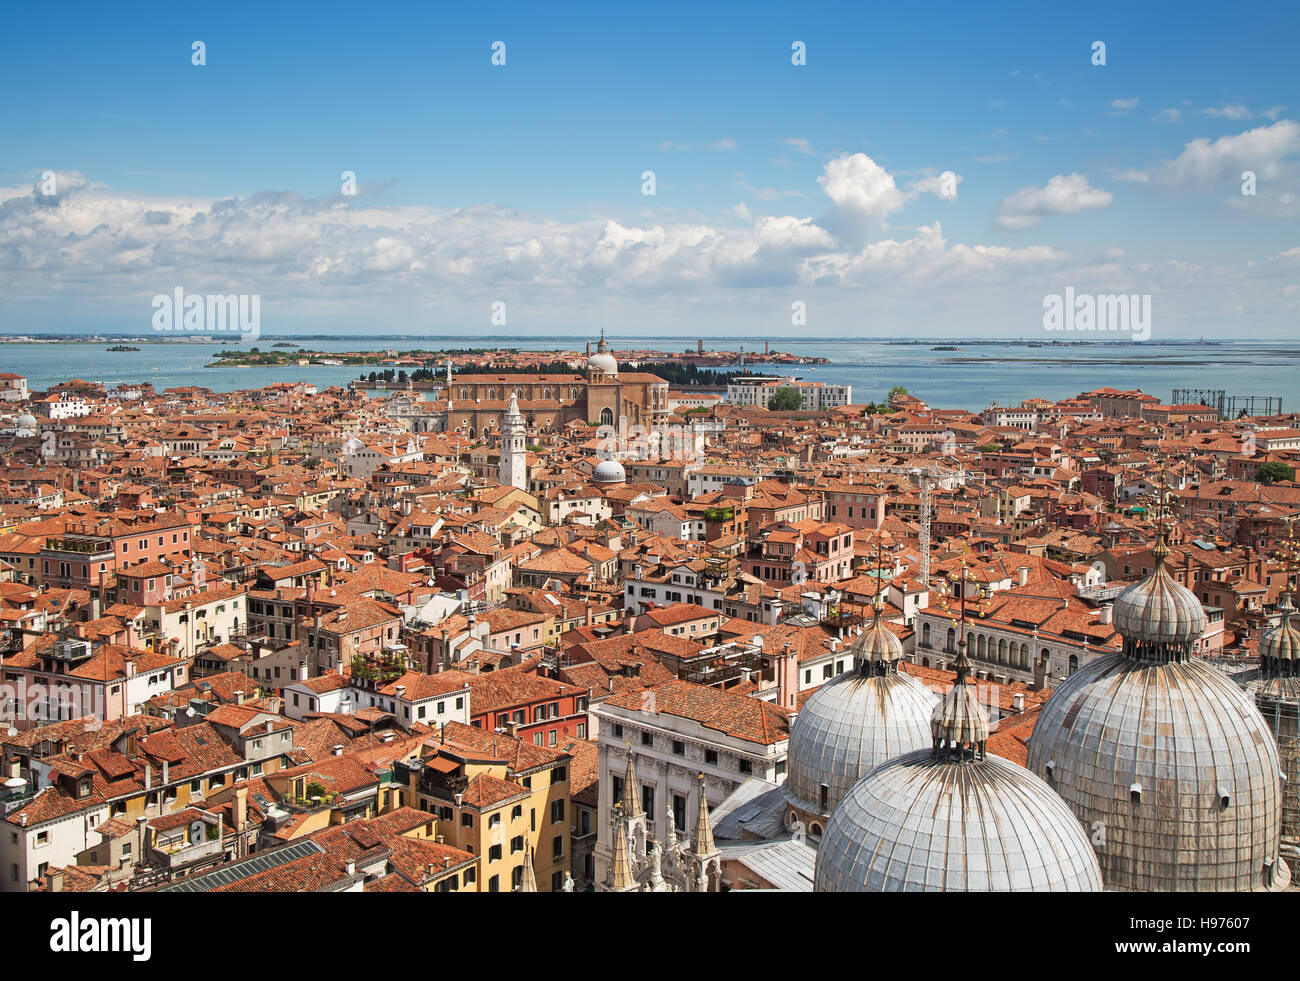 Vista aérea de la ciudad de Venecia, Italia Foto de stock